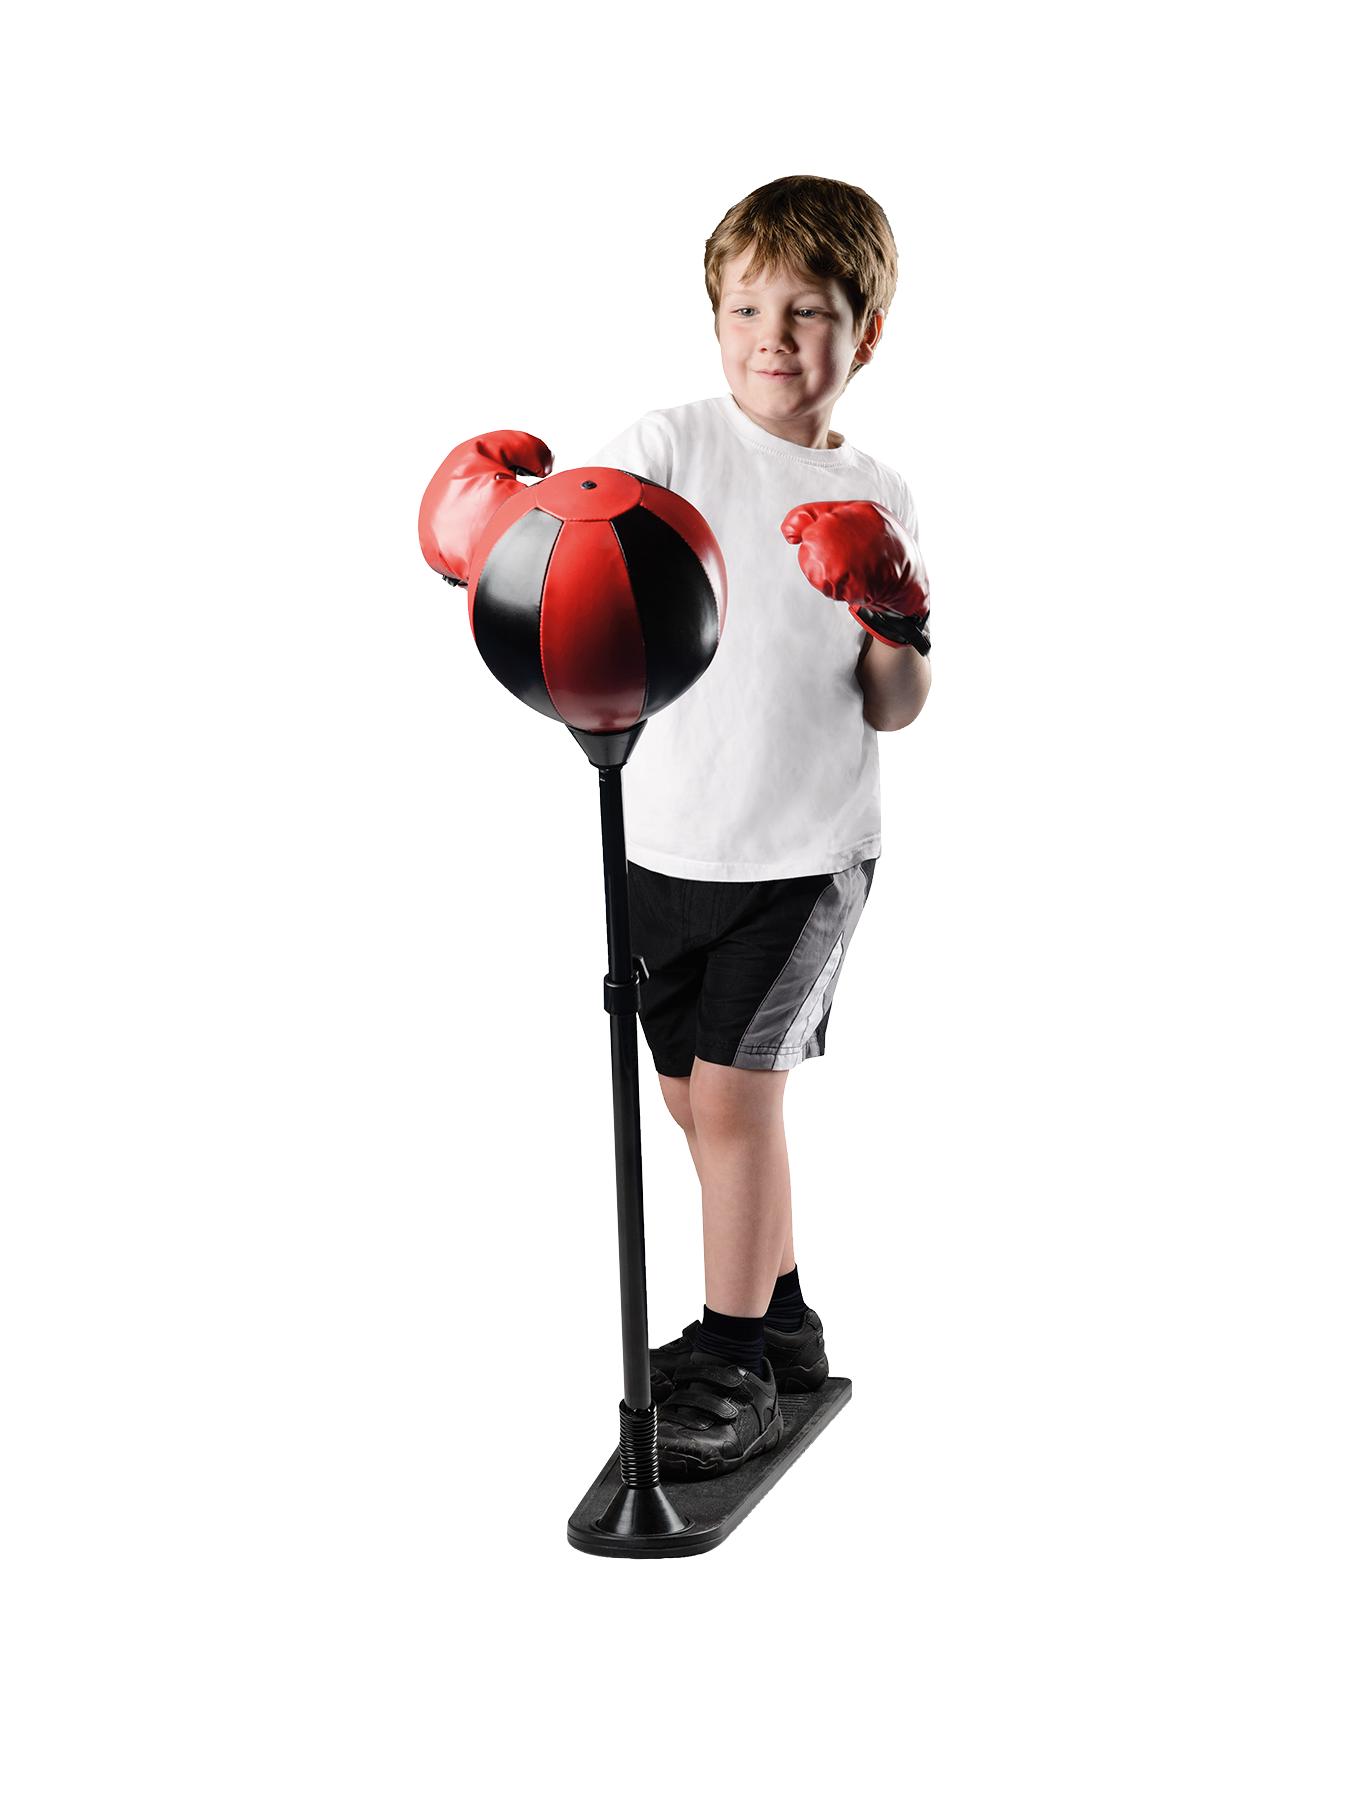 Бокс детский игра. Боксерская груша punching Ball Set. Детский набор для бокса. Набор для бокса детский напольный. Груша боксерская на подставке детская.